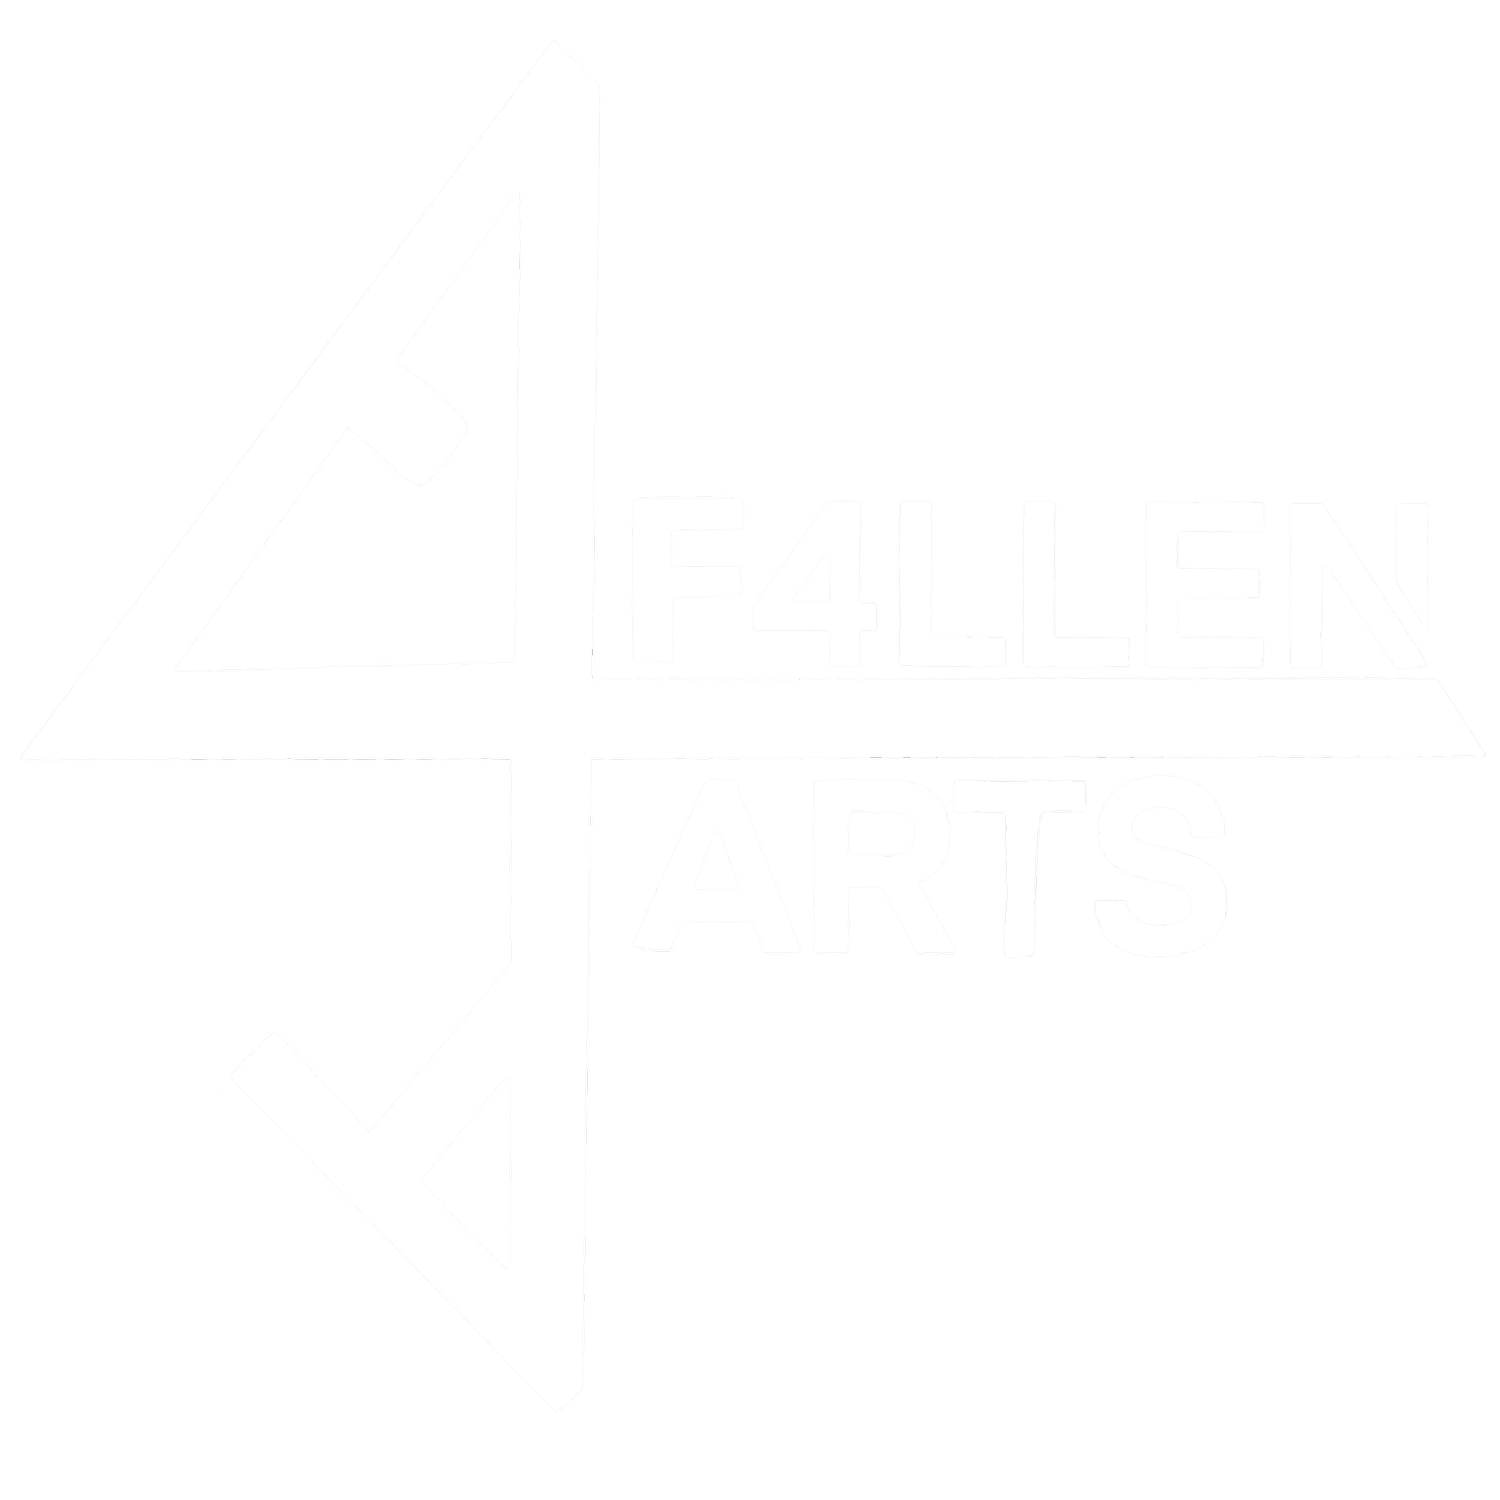 F4llen Arts